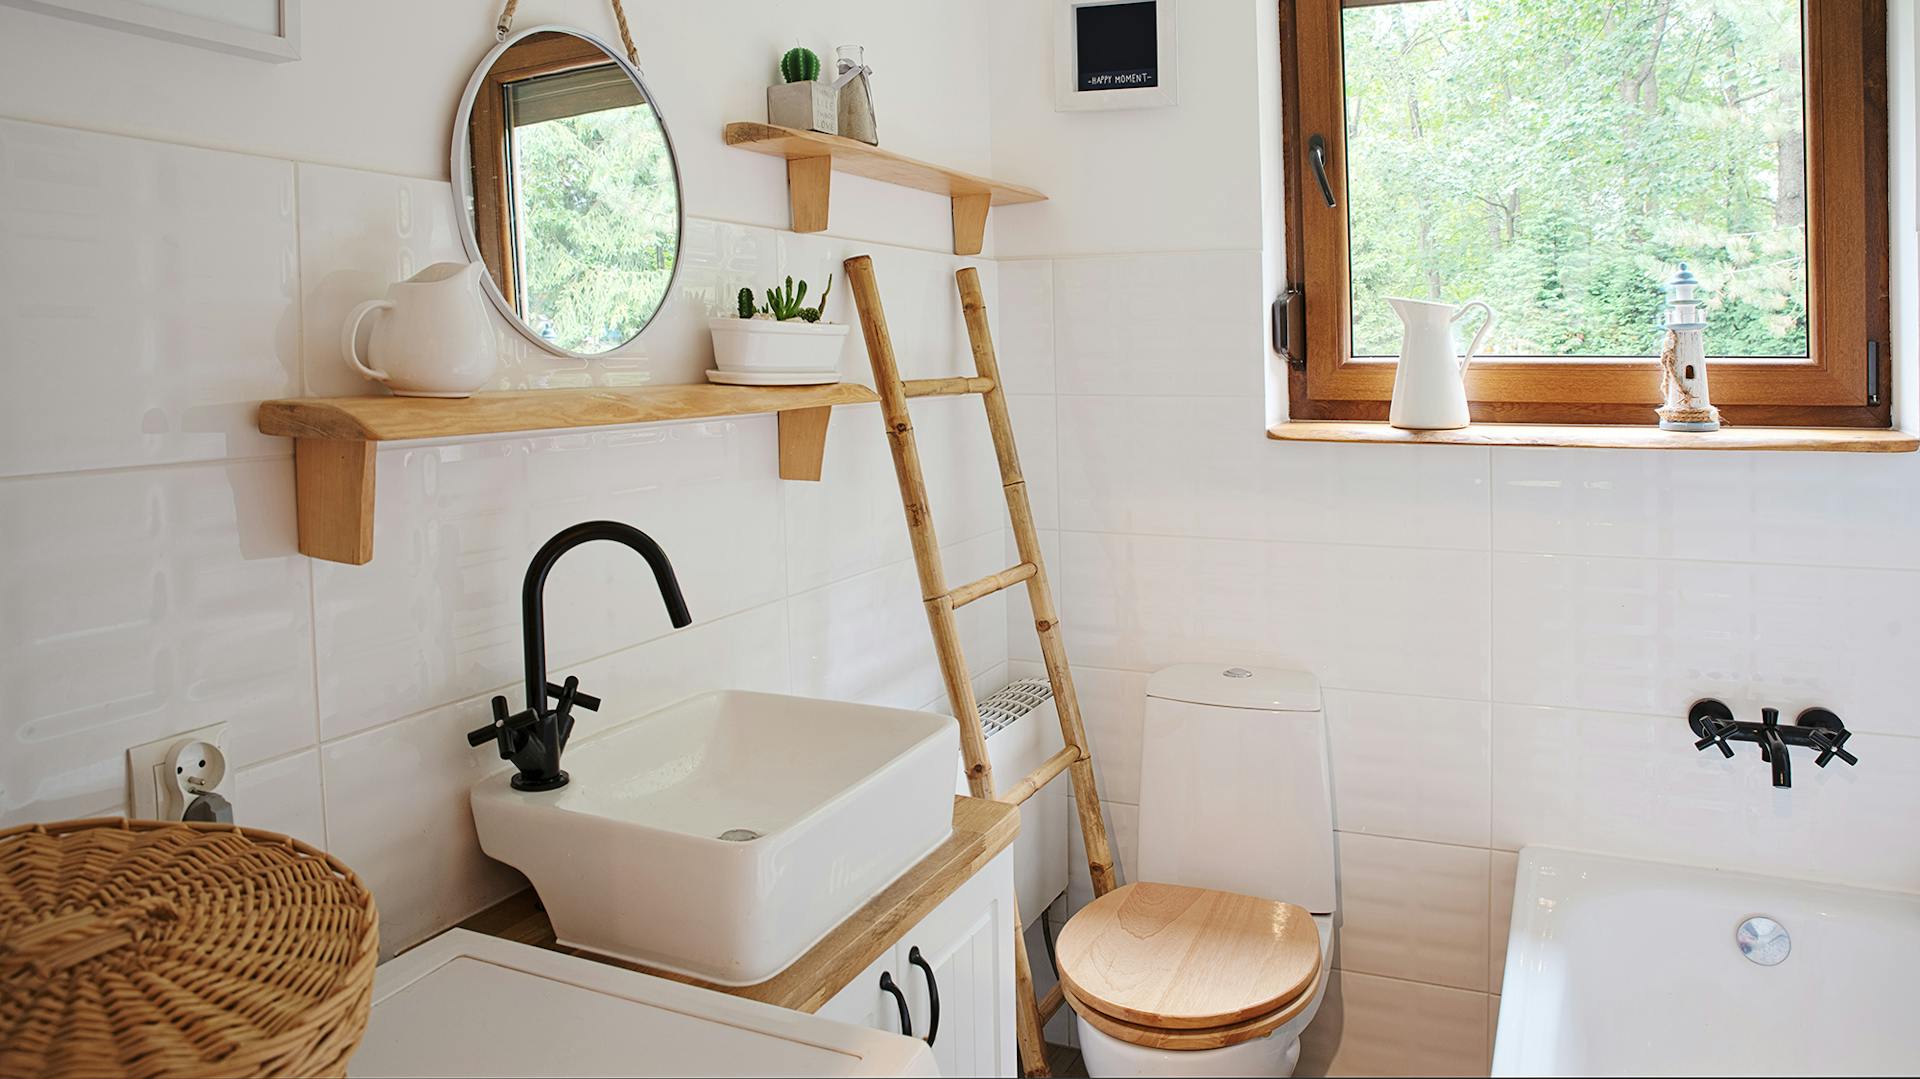 Piccolo bagno con piastrelle chiare, lavabo bianco con rubinetto nero. Il sedile WC, gli elementi decorativi e i telai delle finestre sono in legno.